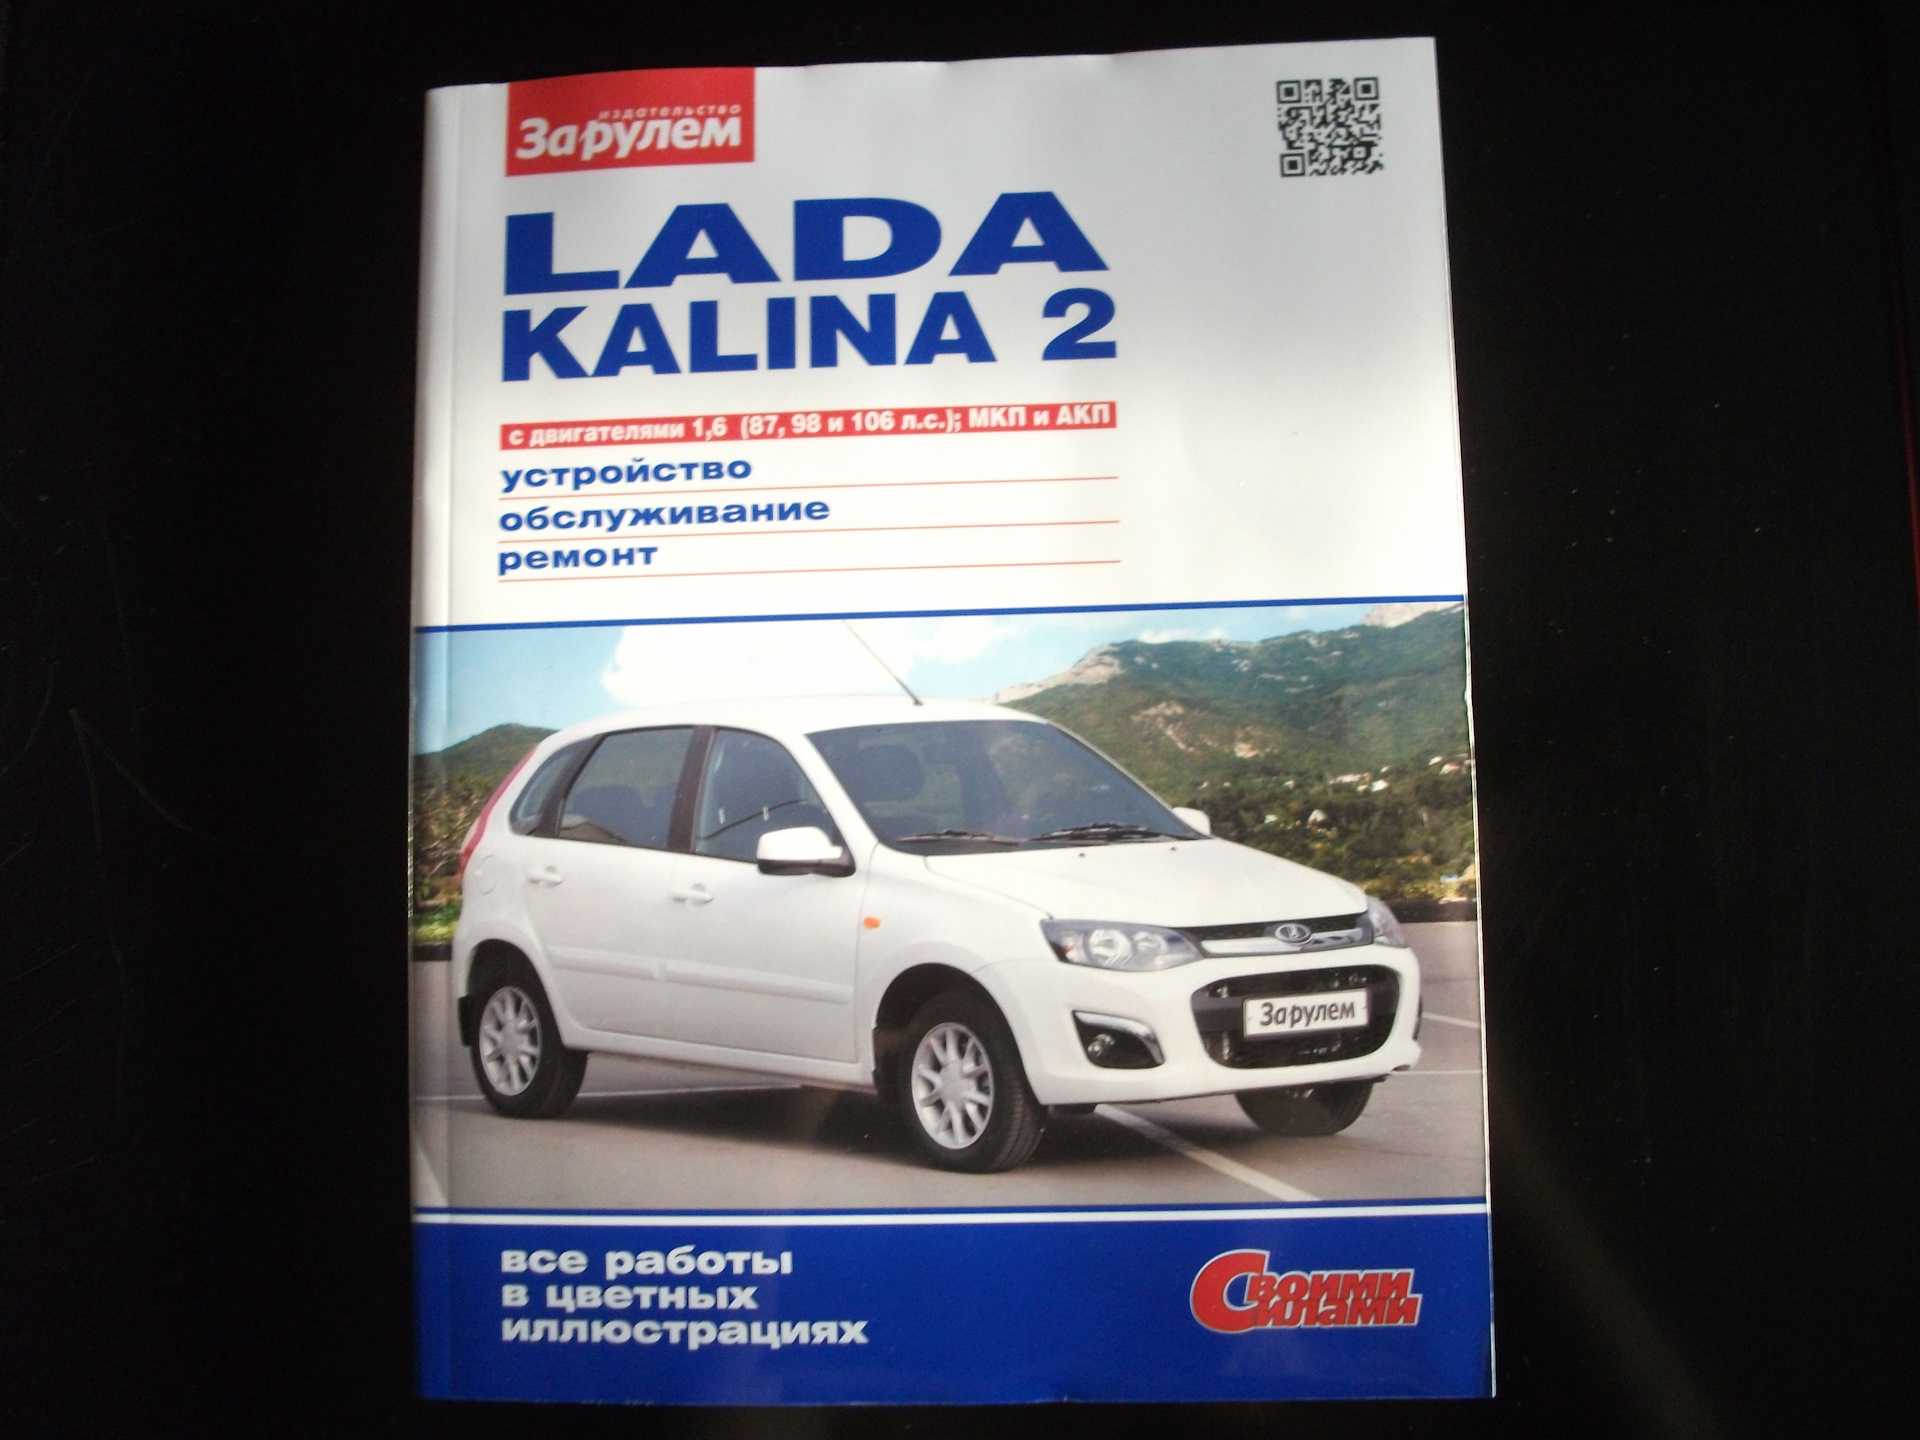 Lada kalina sport версии - запись на то, скачать руководство по эксплуатации - лада-центр юго-запад: дилер lada в г. санкт-петербург